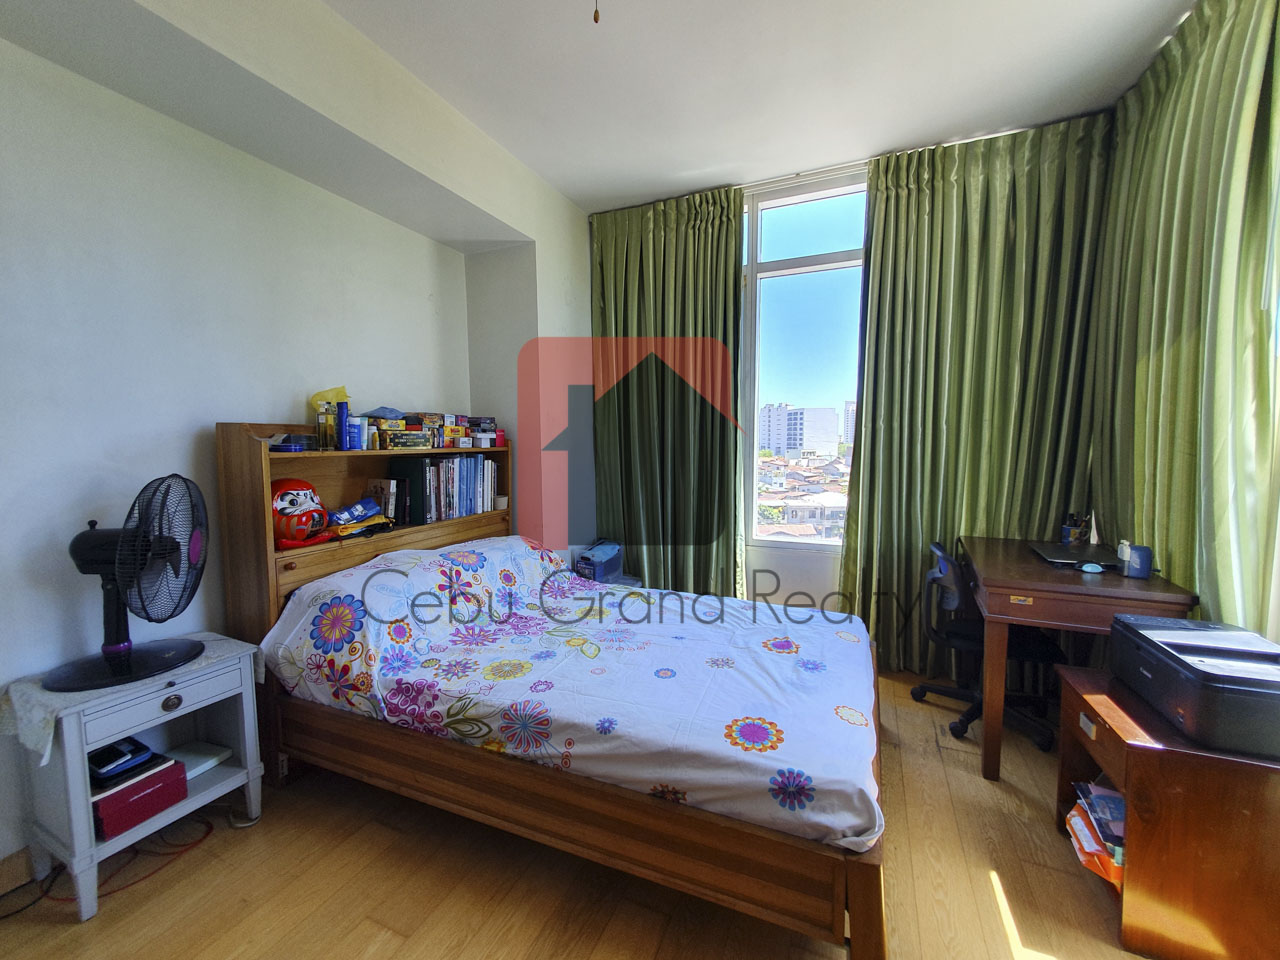 SRBTS11 2 Bedroom Condo for Sale in Cebu Business Park Cebu Gran